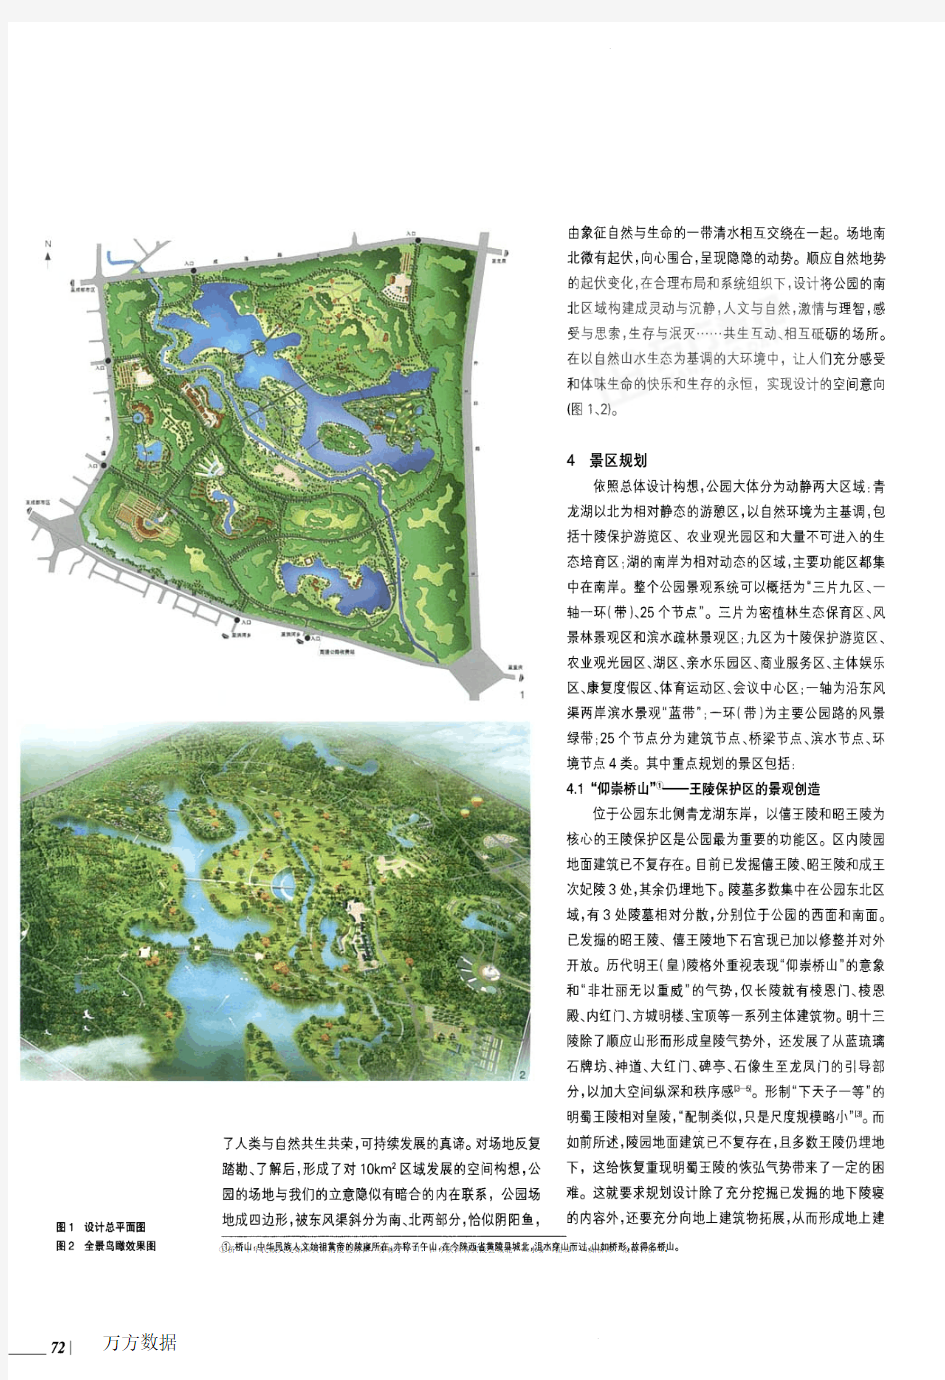 成都十陵郊野公园规划设计